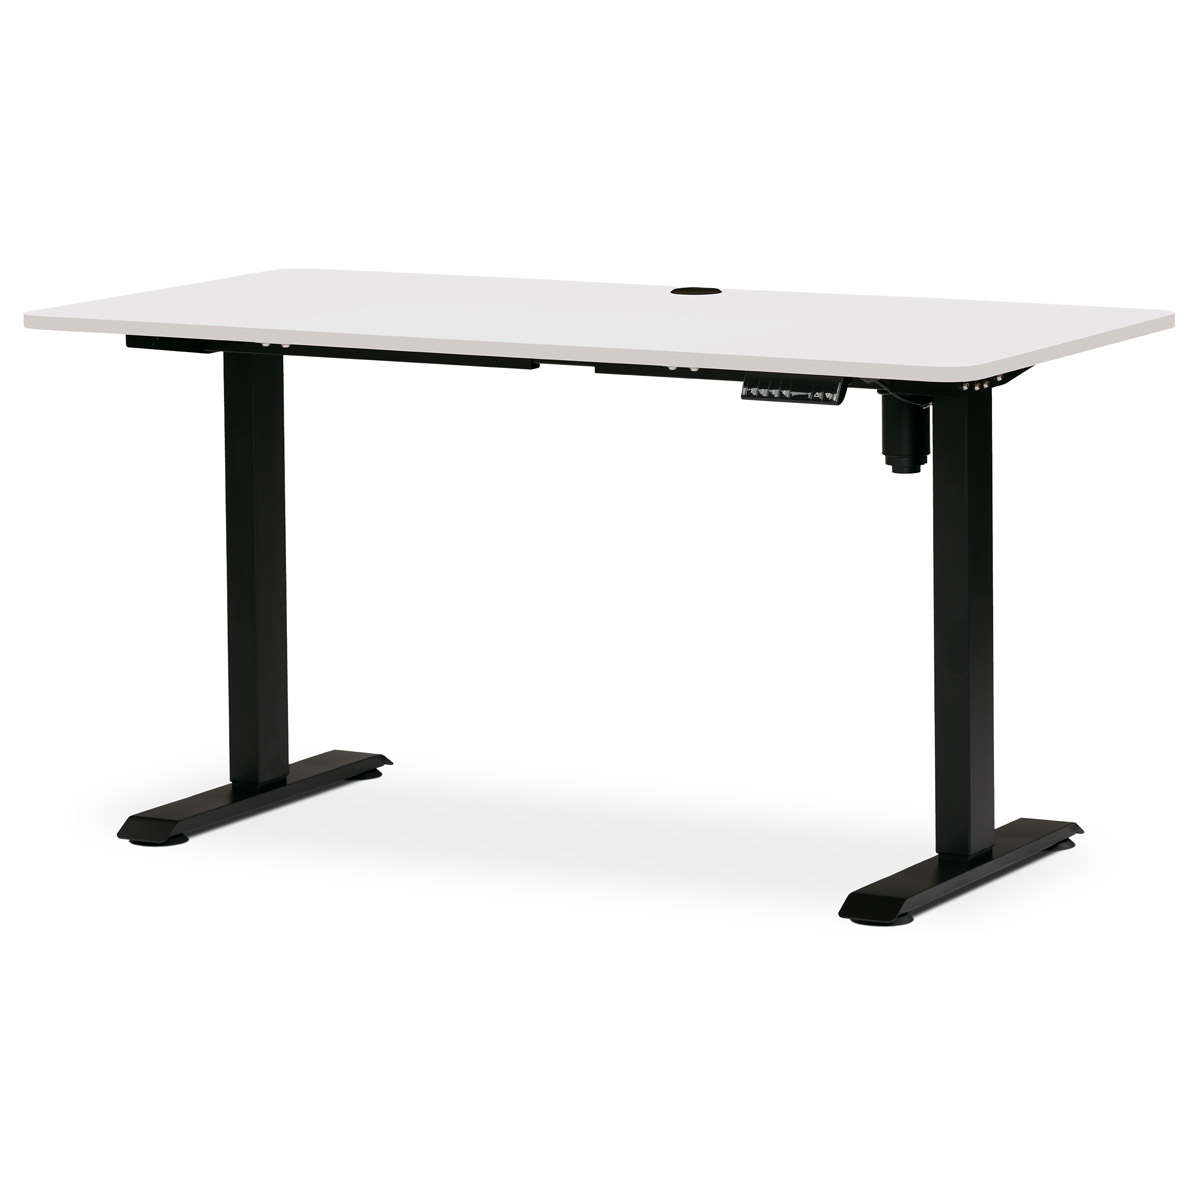 Kancelářský polohovací stůl s elektricky nastavitelnou výší pracovní desky. Bílá deska. Kovové podnoží v černé barvě.